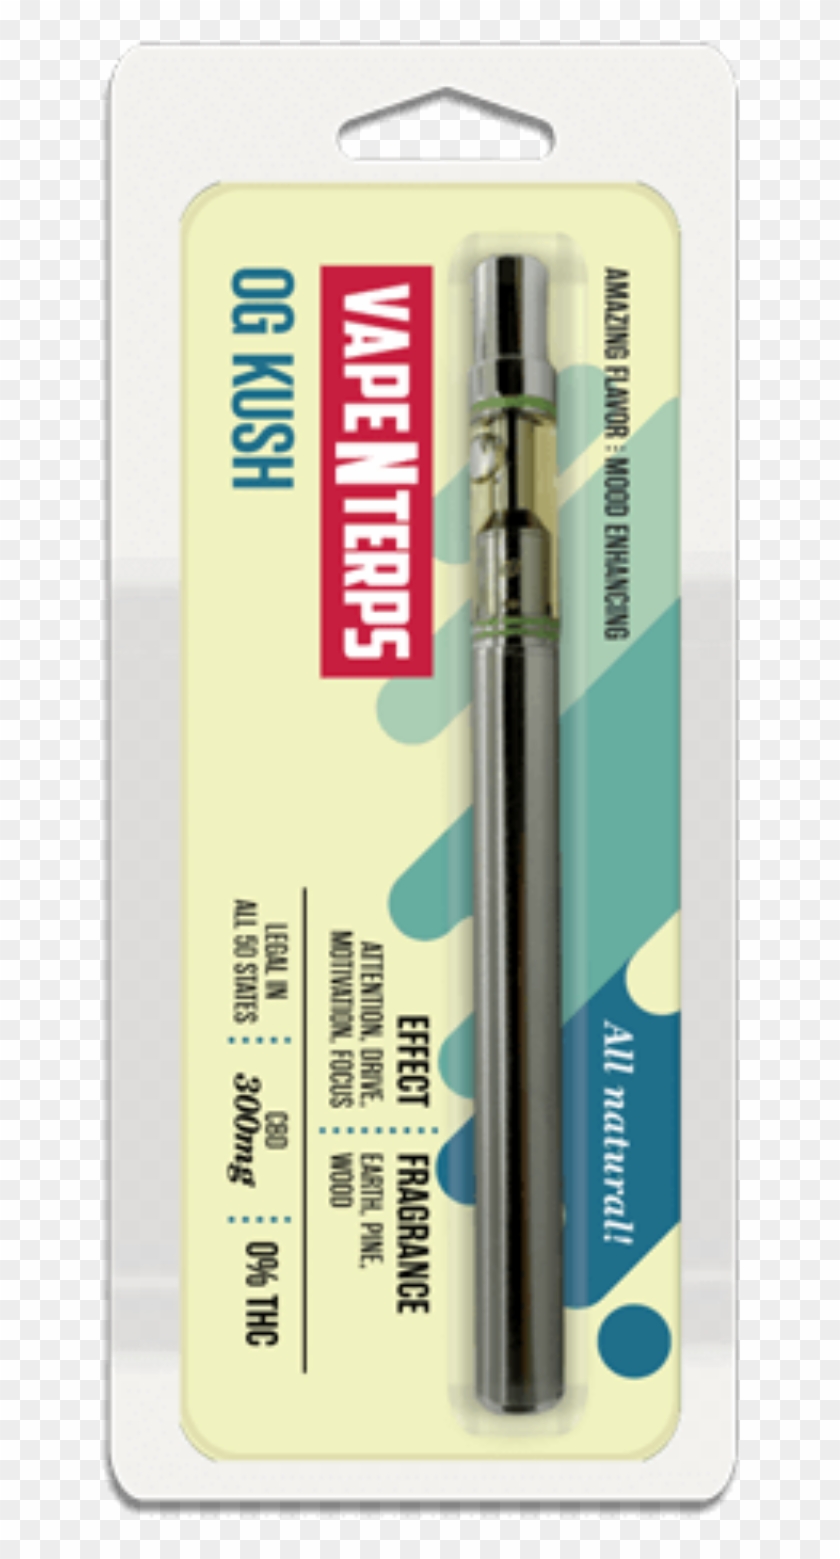 300mg Cbd Og Kush Vape Pen By Vapenterps - Cbd Vape Cartridge Gelato Clipart #1298830